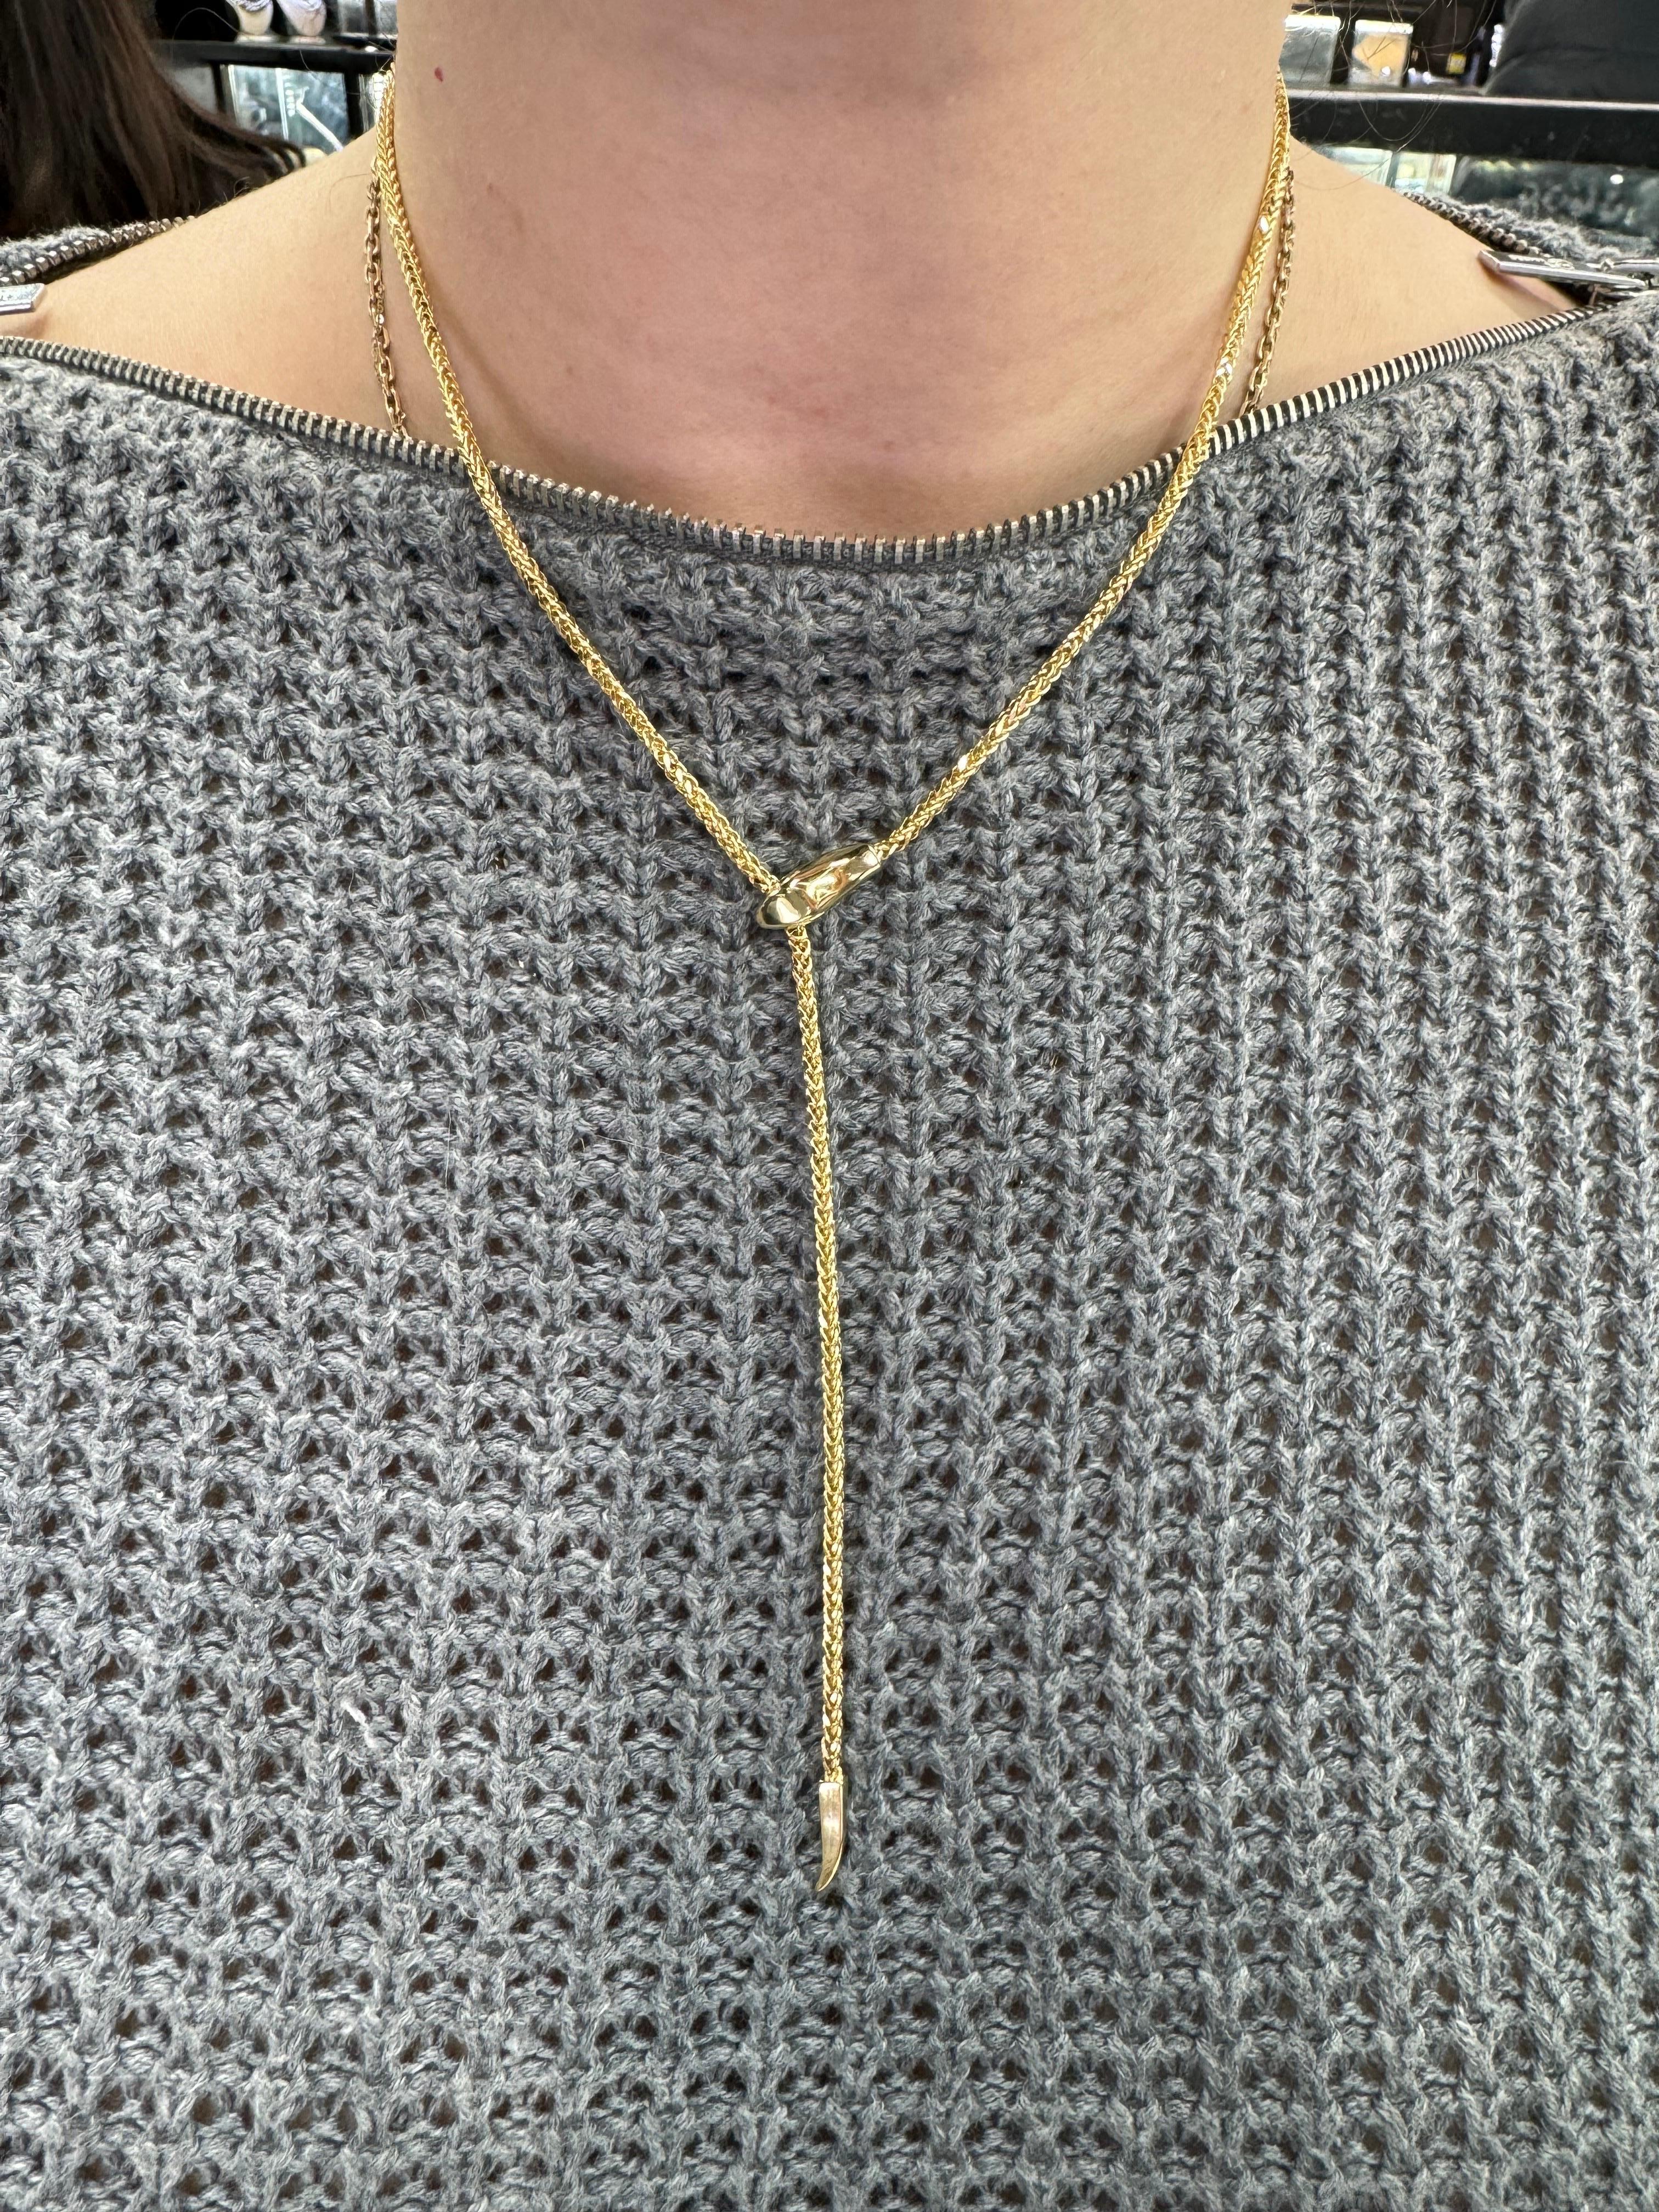 Fabriqué en Italie, ce collier présente un motif de serpent rendant le lariat réglable, en or jaune 14 carats. 
Peut être porté en tour de cou ou plus long. 

Disponible en trois tailles différentes. 
DM pour plus d'informations et de photos. 